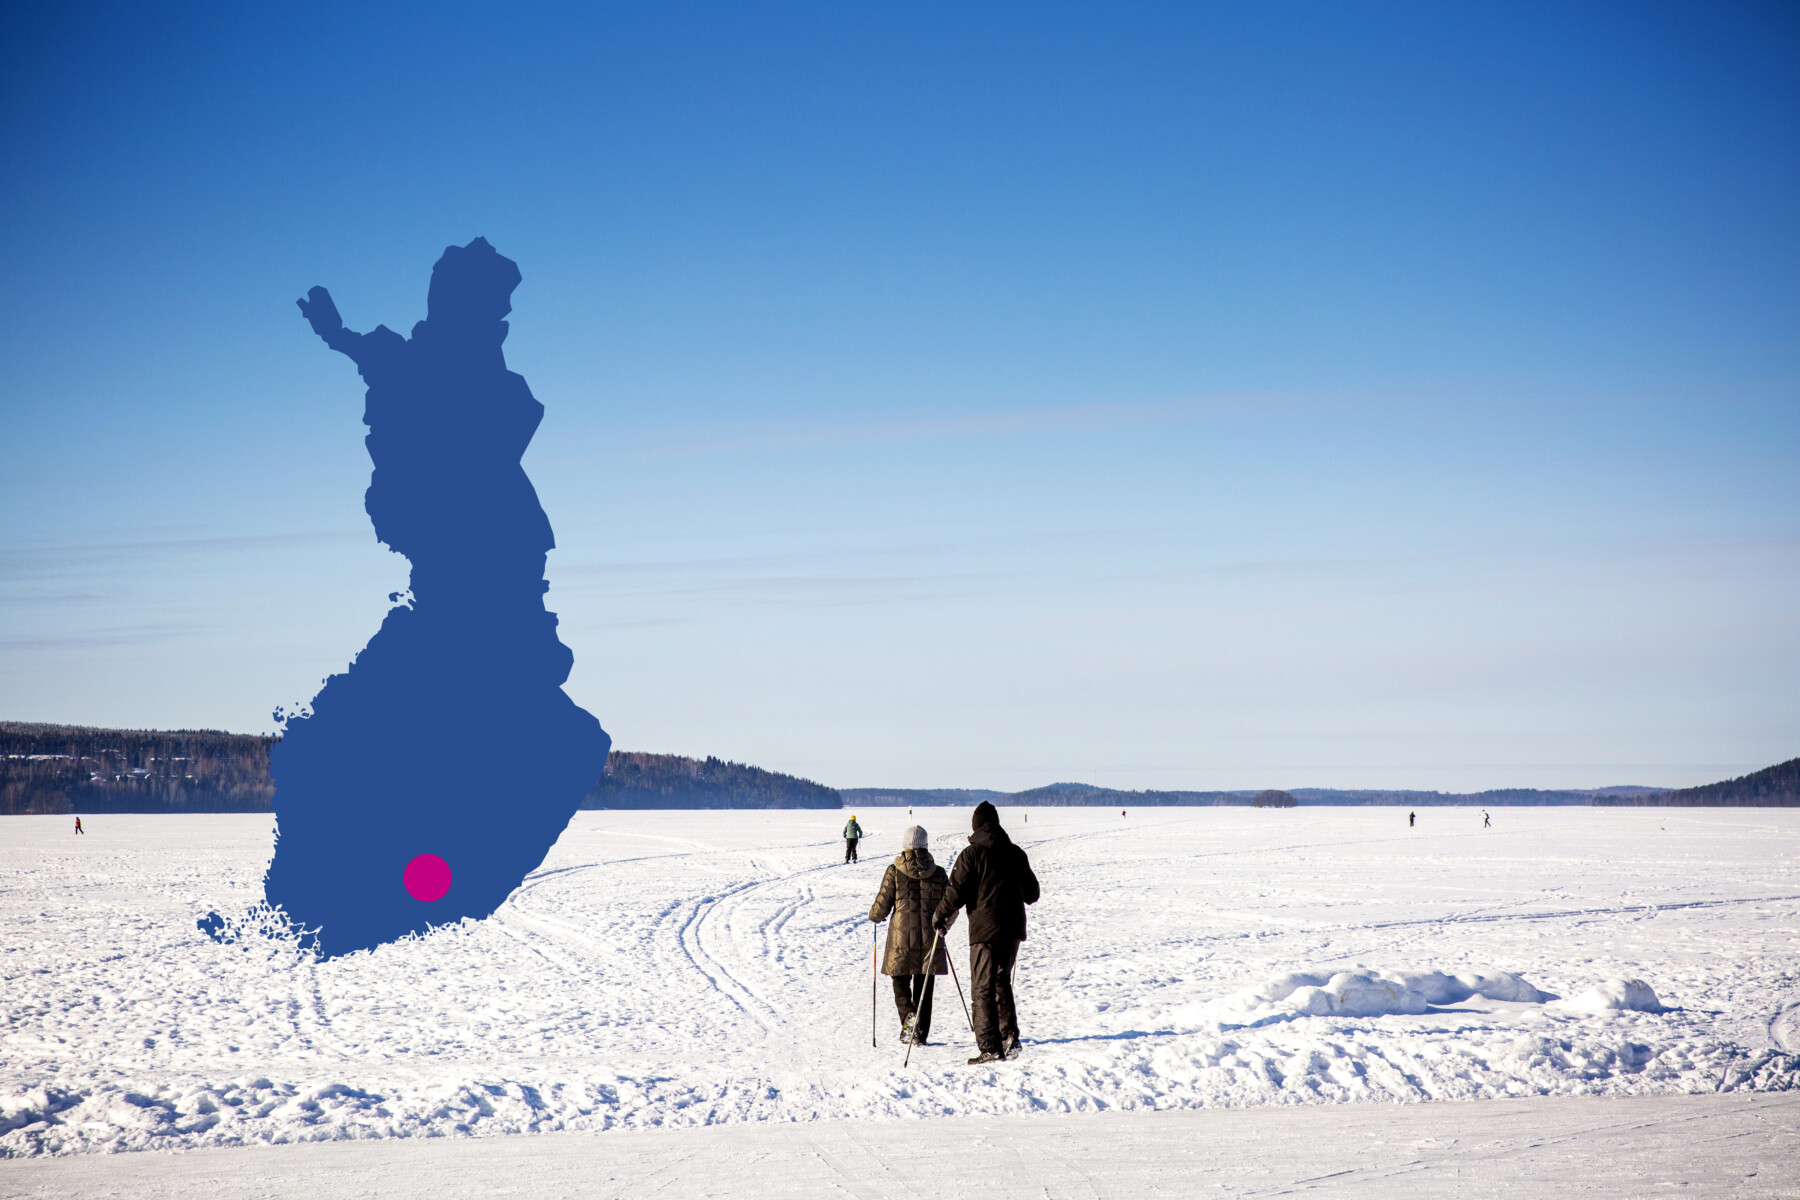 أشخاص يمارسون التزلج فوق بحيرة متجمدة تحت السماء الزرقاء في مدينة لاهتي، وهي مدينة تقع جنوبي فنلندا.